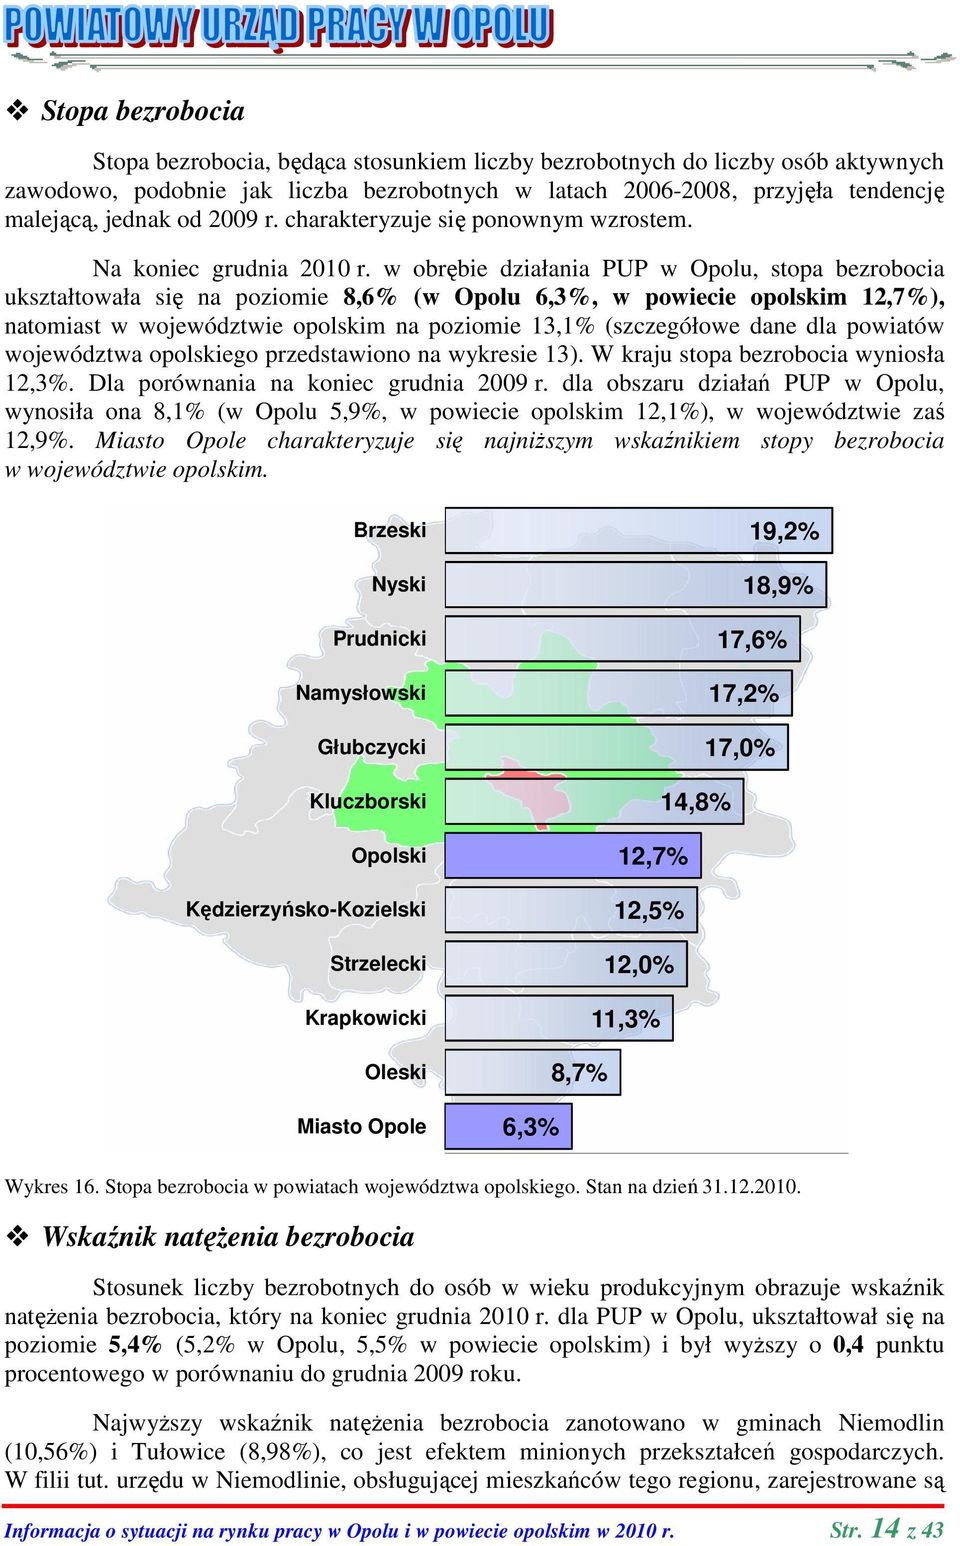 w obrębie działania PUP w Opolu ukształtowała się na poziomie 8,6% (w Opolu 6,3%, w powiecie opolskim natomiast w województwie opolskim na poziomie 13,1% (szczegółowe dane dla powiatów województwa